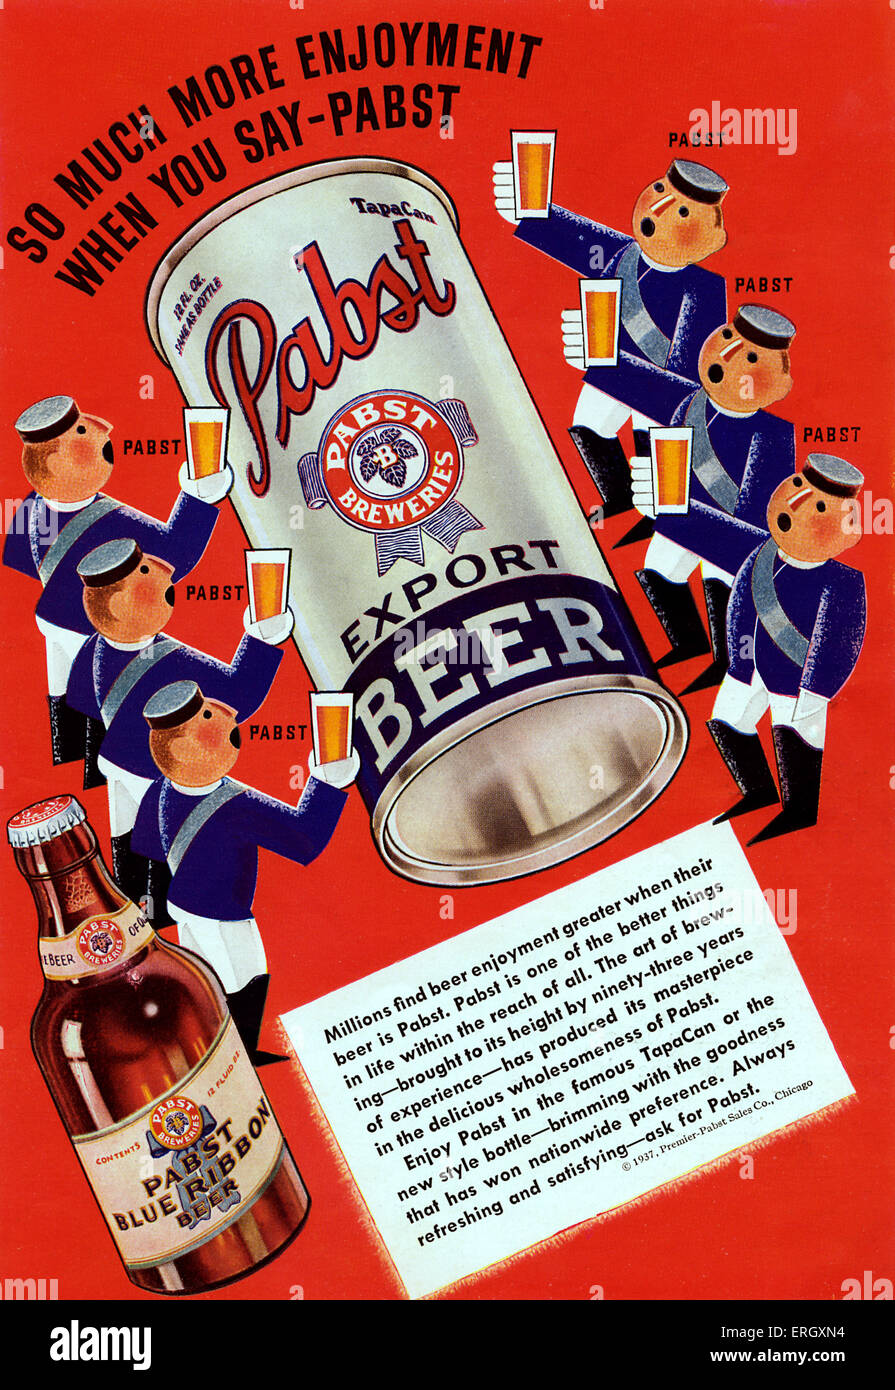 "Pabst blue ribbon beer pubblicità. La didascalia recita: 'So molto più divertimento quando si dice- Pabst'. Foto Stock